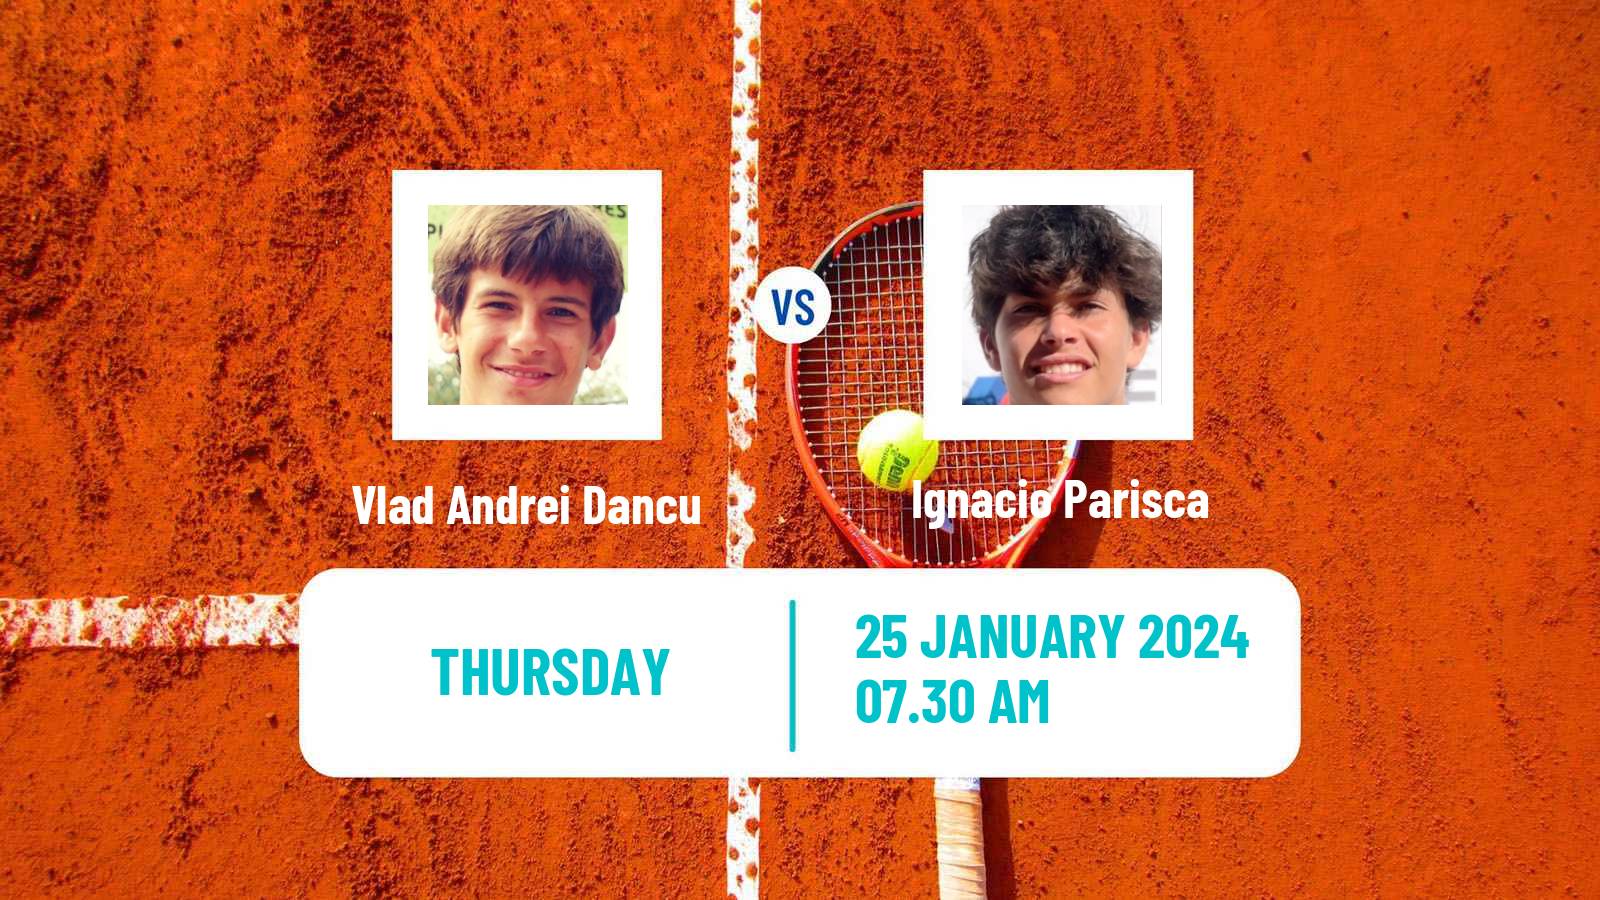 Tennis ITF M15 Antalya 3 Men Vlad Andrei Dancu - Ignacio Parisca